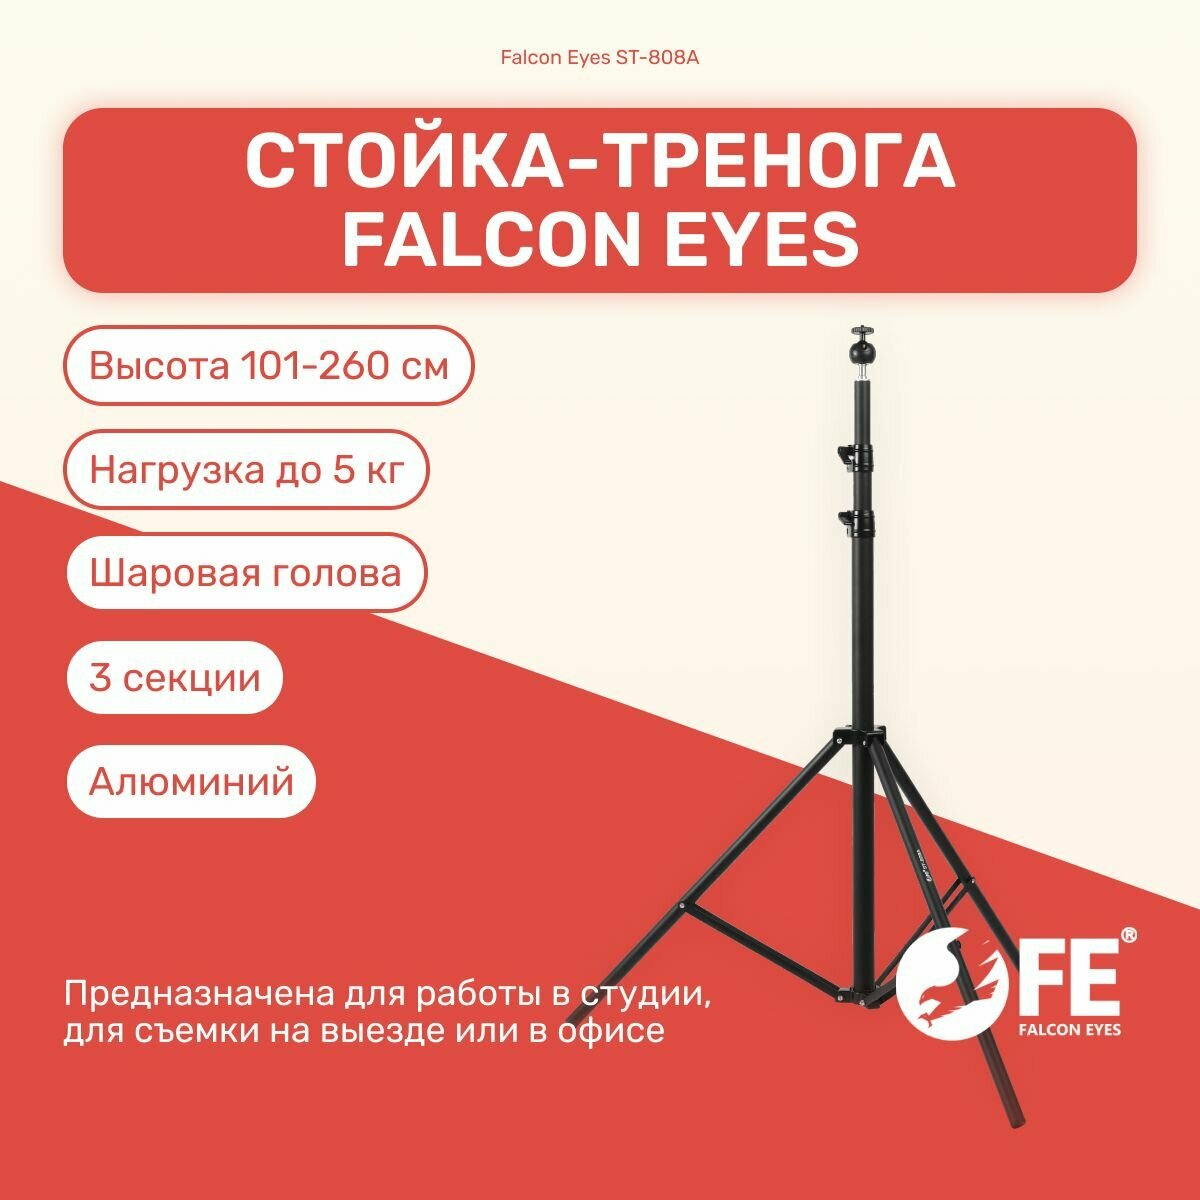 Стойка-тренога Falcon Eyes ST-808A 260 см для фото/видеостудии универсвльная для светового оборудования фотозоны штатив